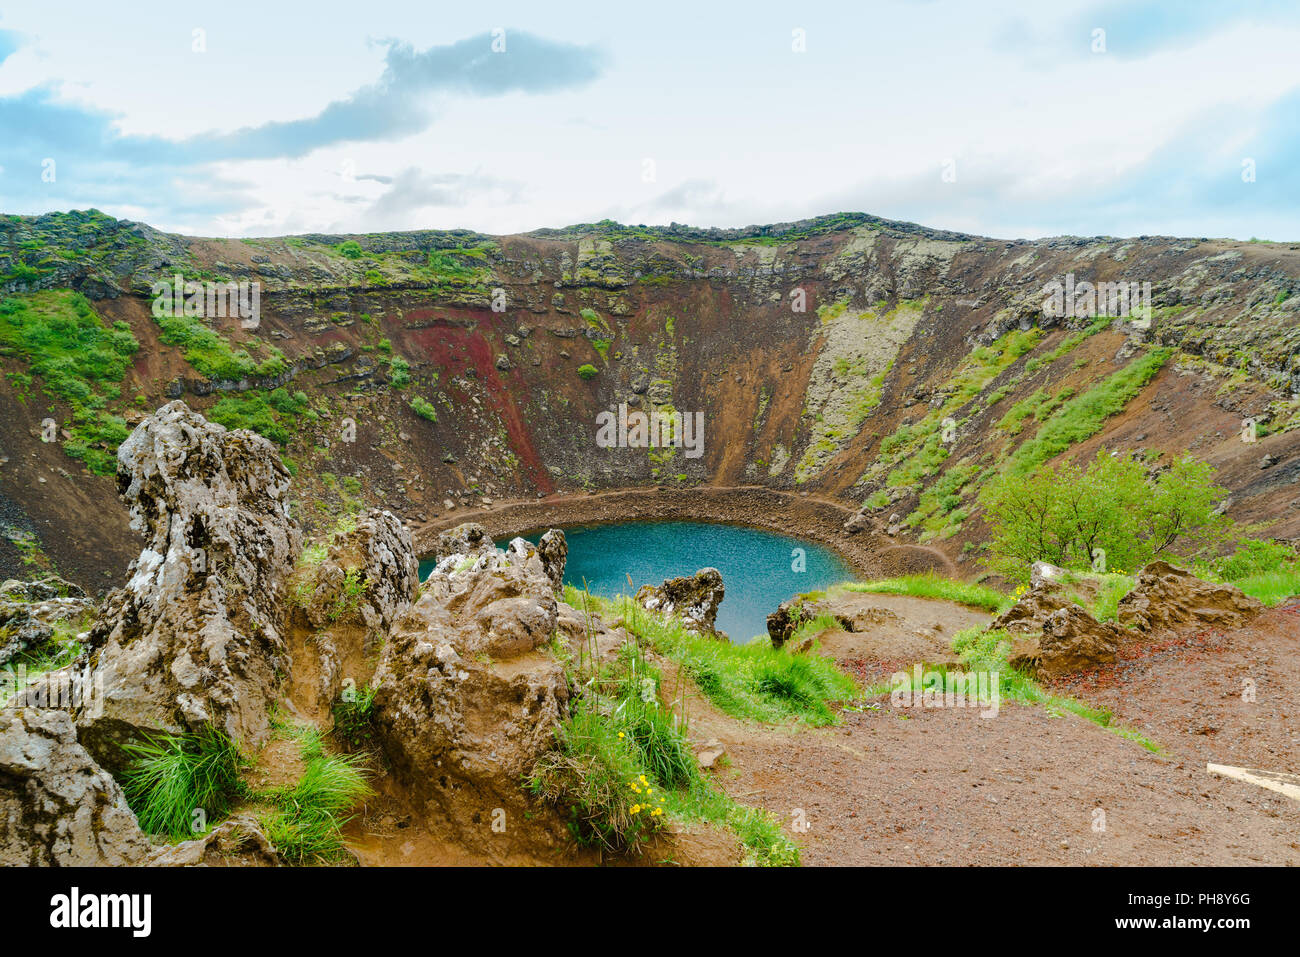 Kerid un lago riempito il cratere vulcanico Foto Stock